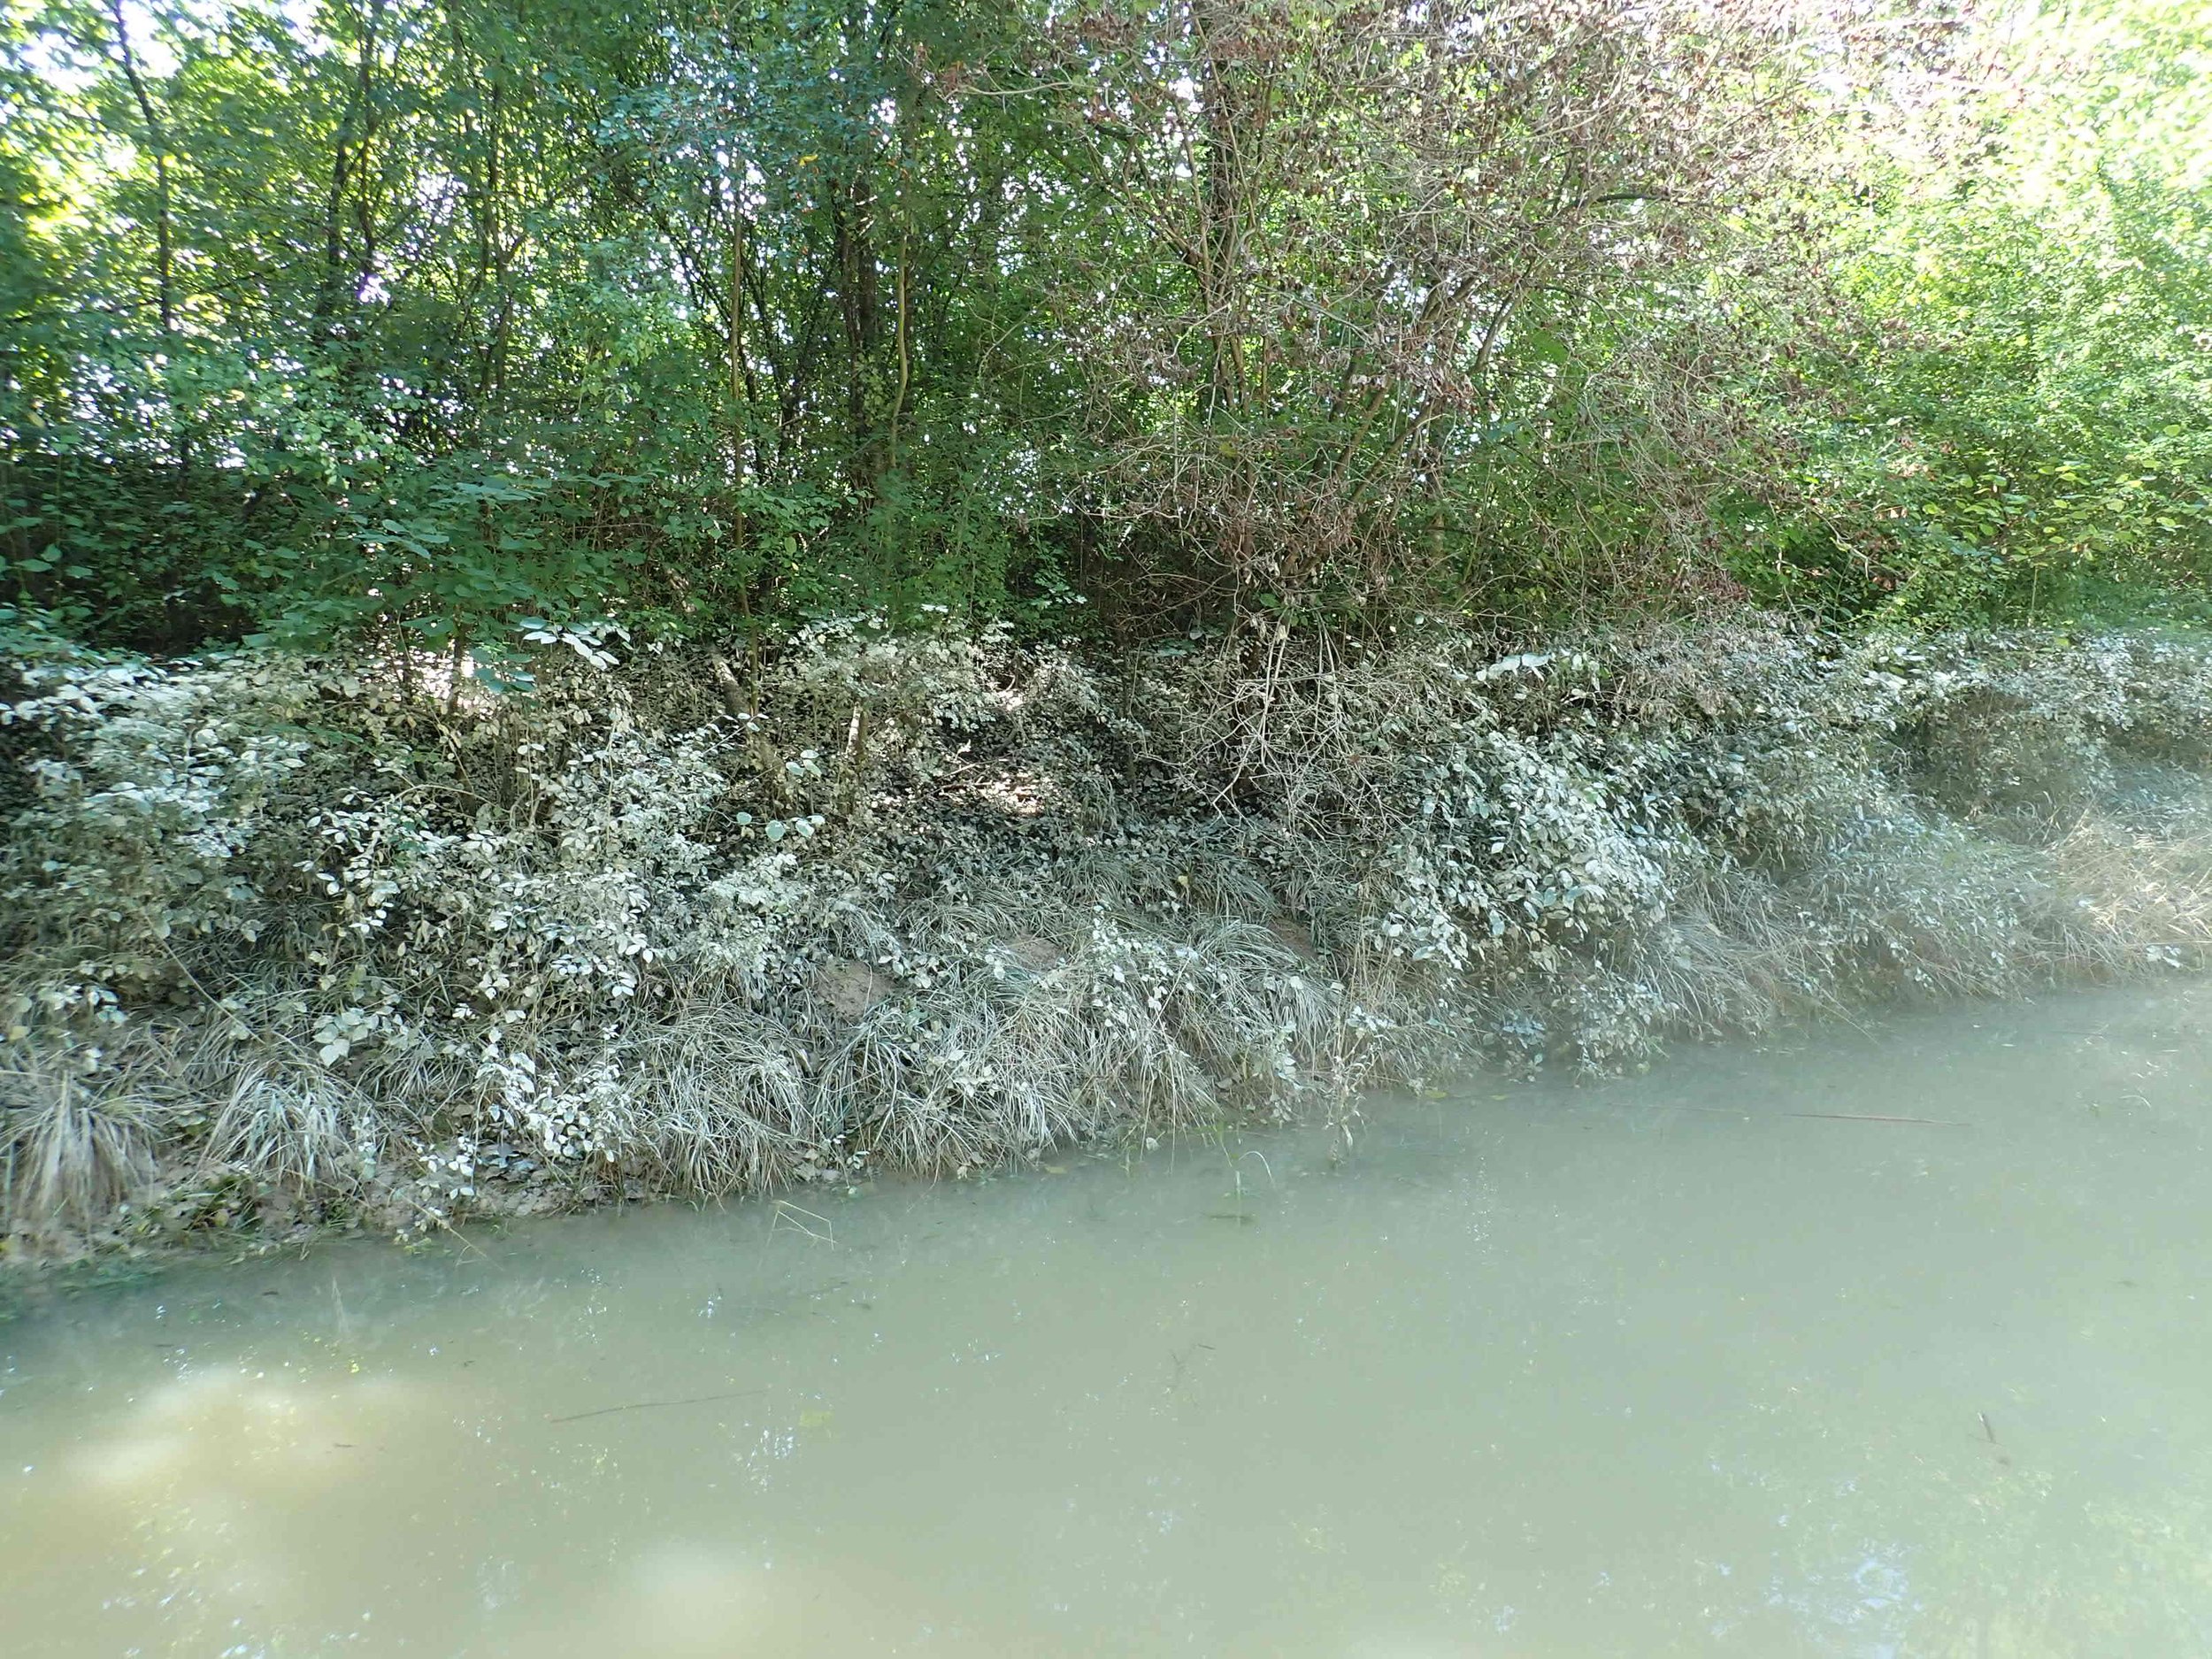  Spuren des Thur-Hochwassers Ende August 2020. Als Folge davon war das Wasser trüb und die Vegetation um den Weiher mit einer trockenen Schlammschicht überzogen 